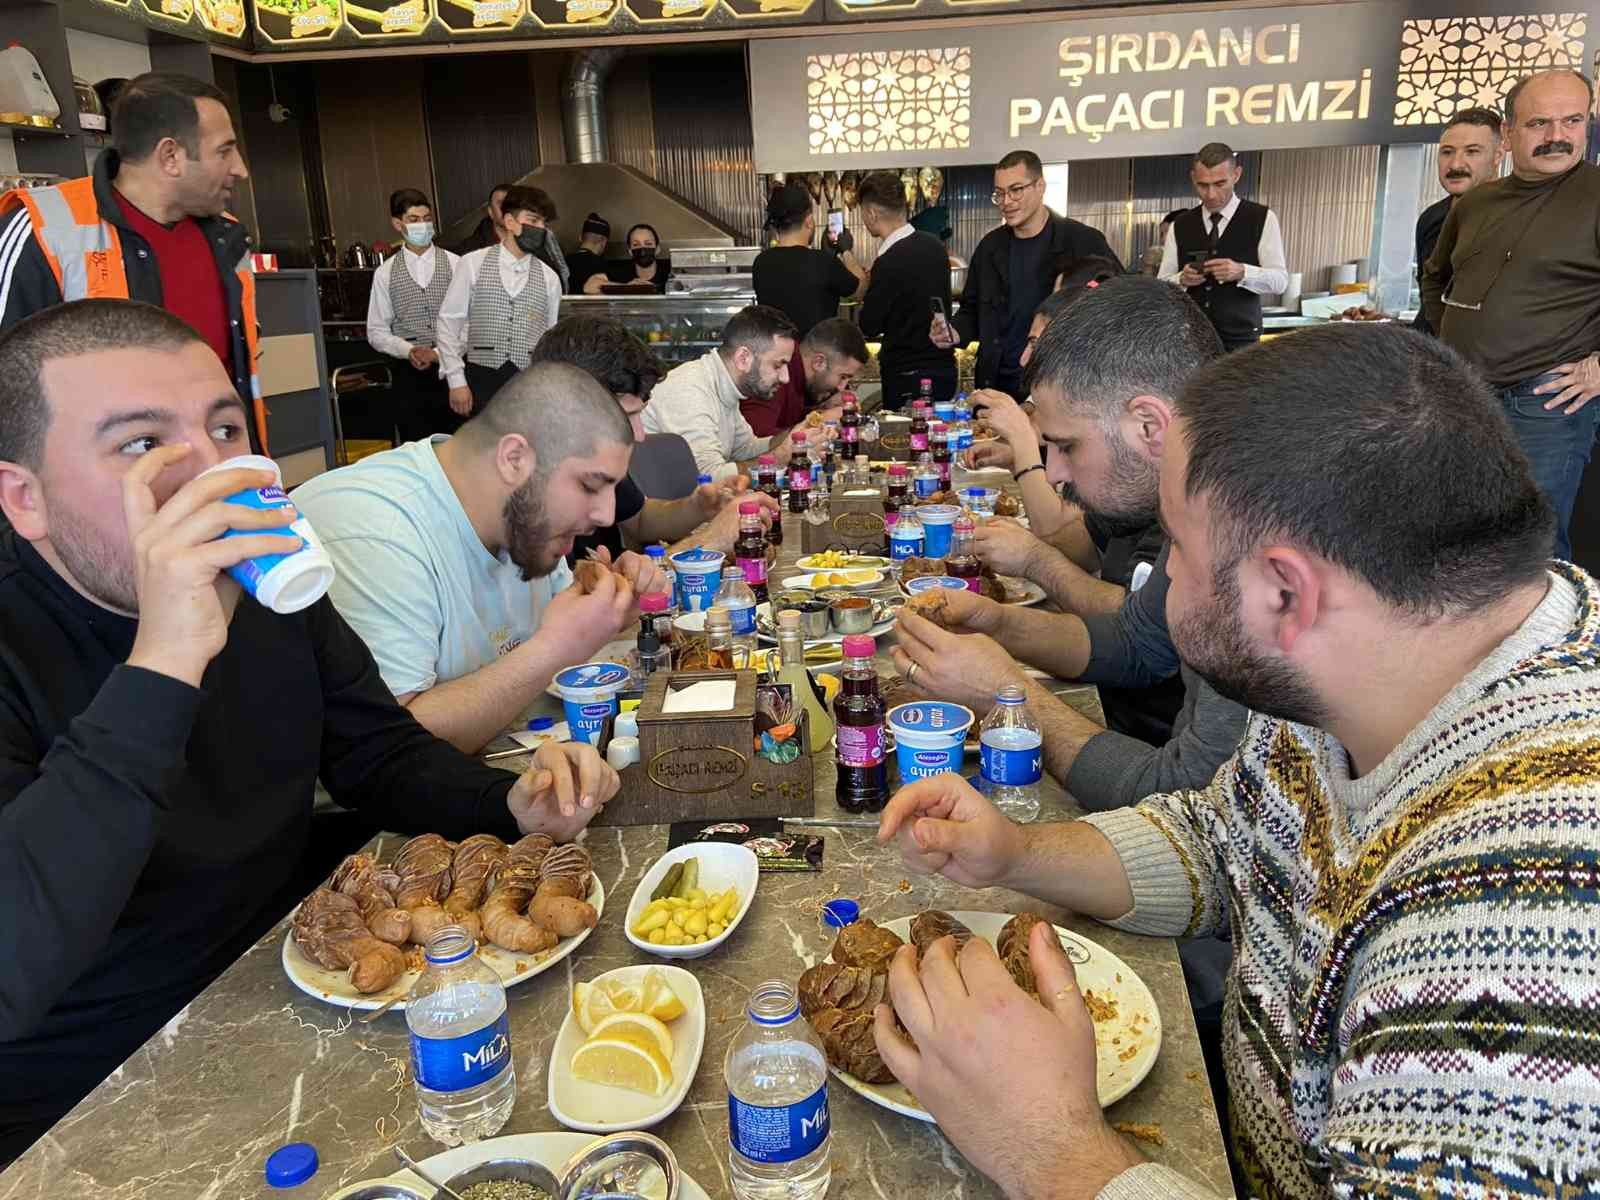 İstanbul Esenyurt’ta bir restoranda düzenlenen şırdan yarışması renkli görüntülere sahne oldu. Yoğun katılımla gerçekleşen yarışmayı 8 dakikada ...